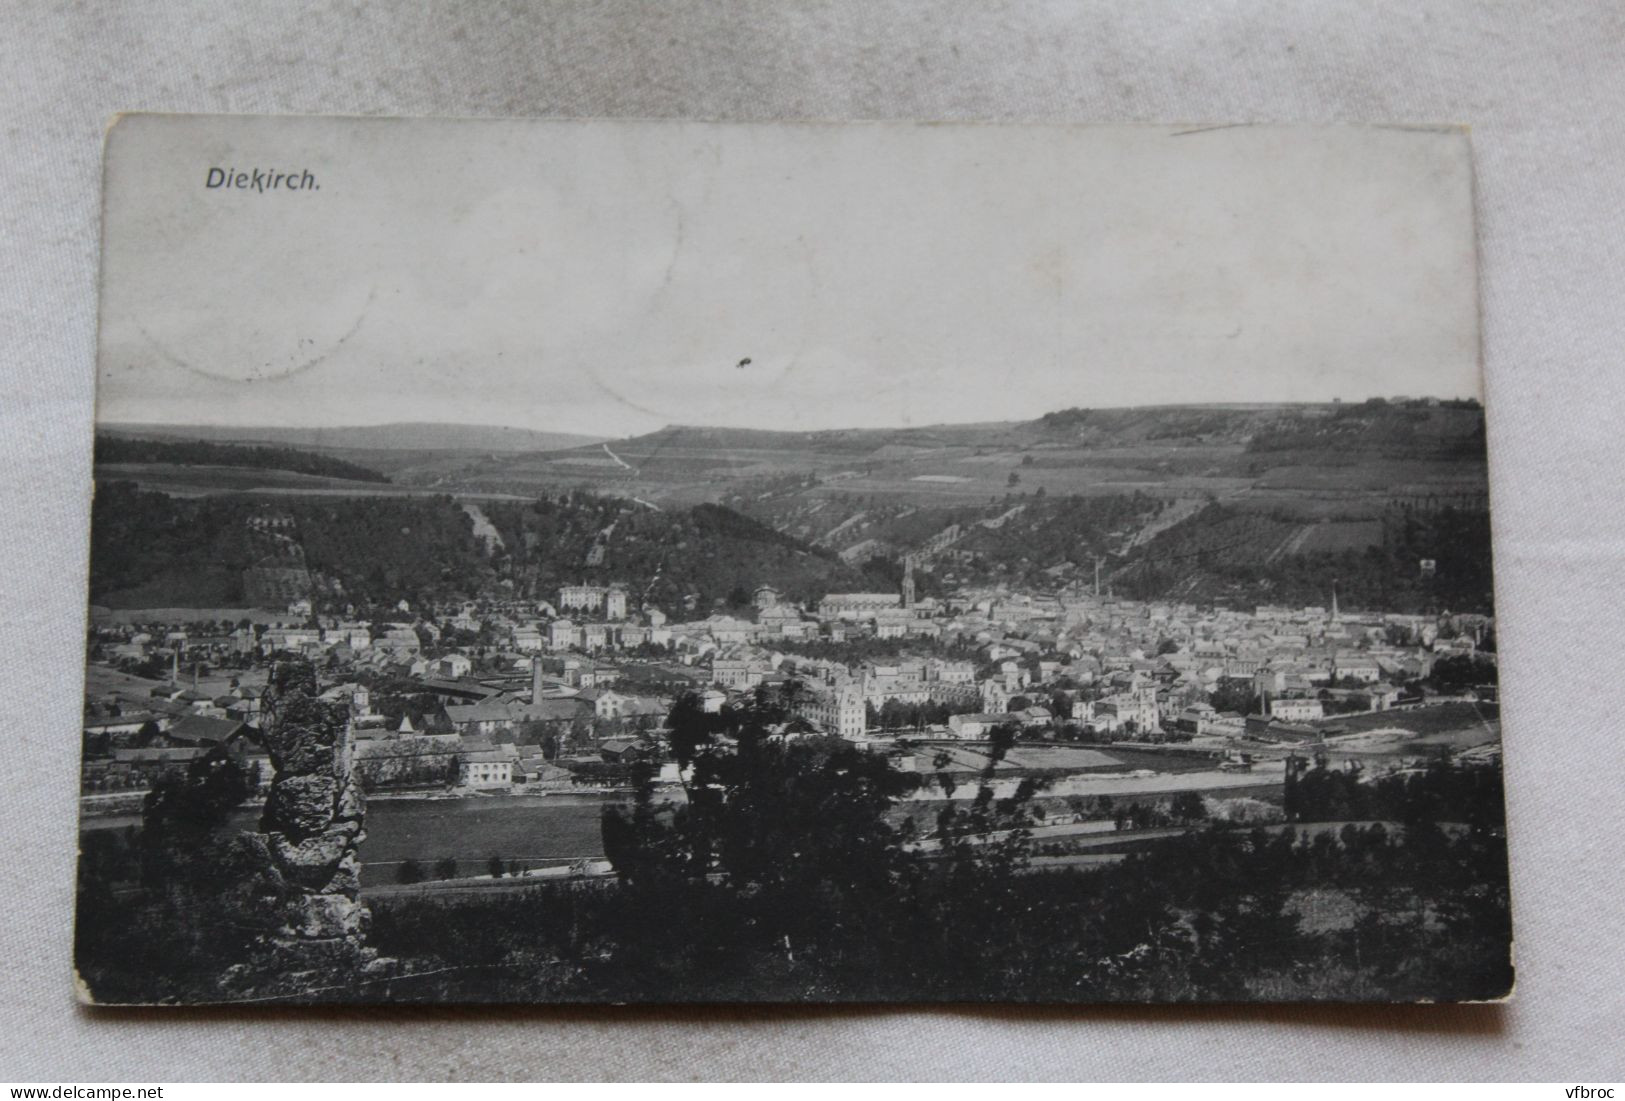 Cpa 1910, Diekirch, Luxembourg - Diekirch